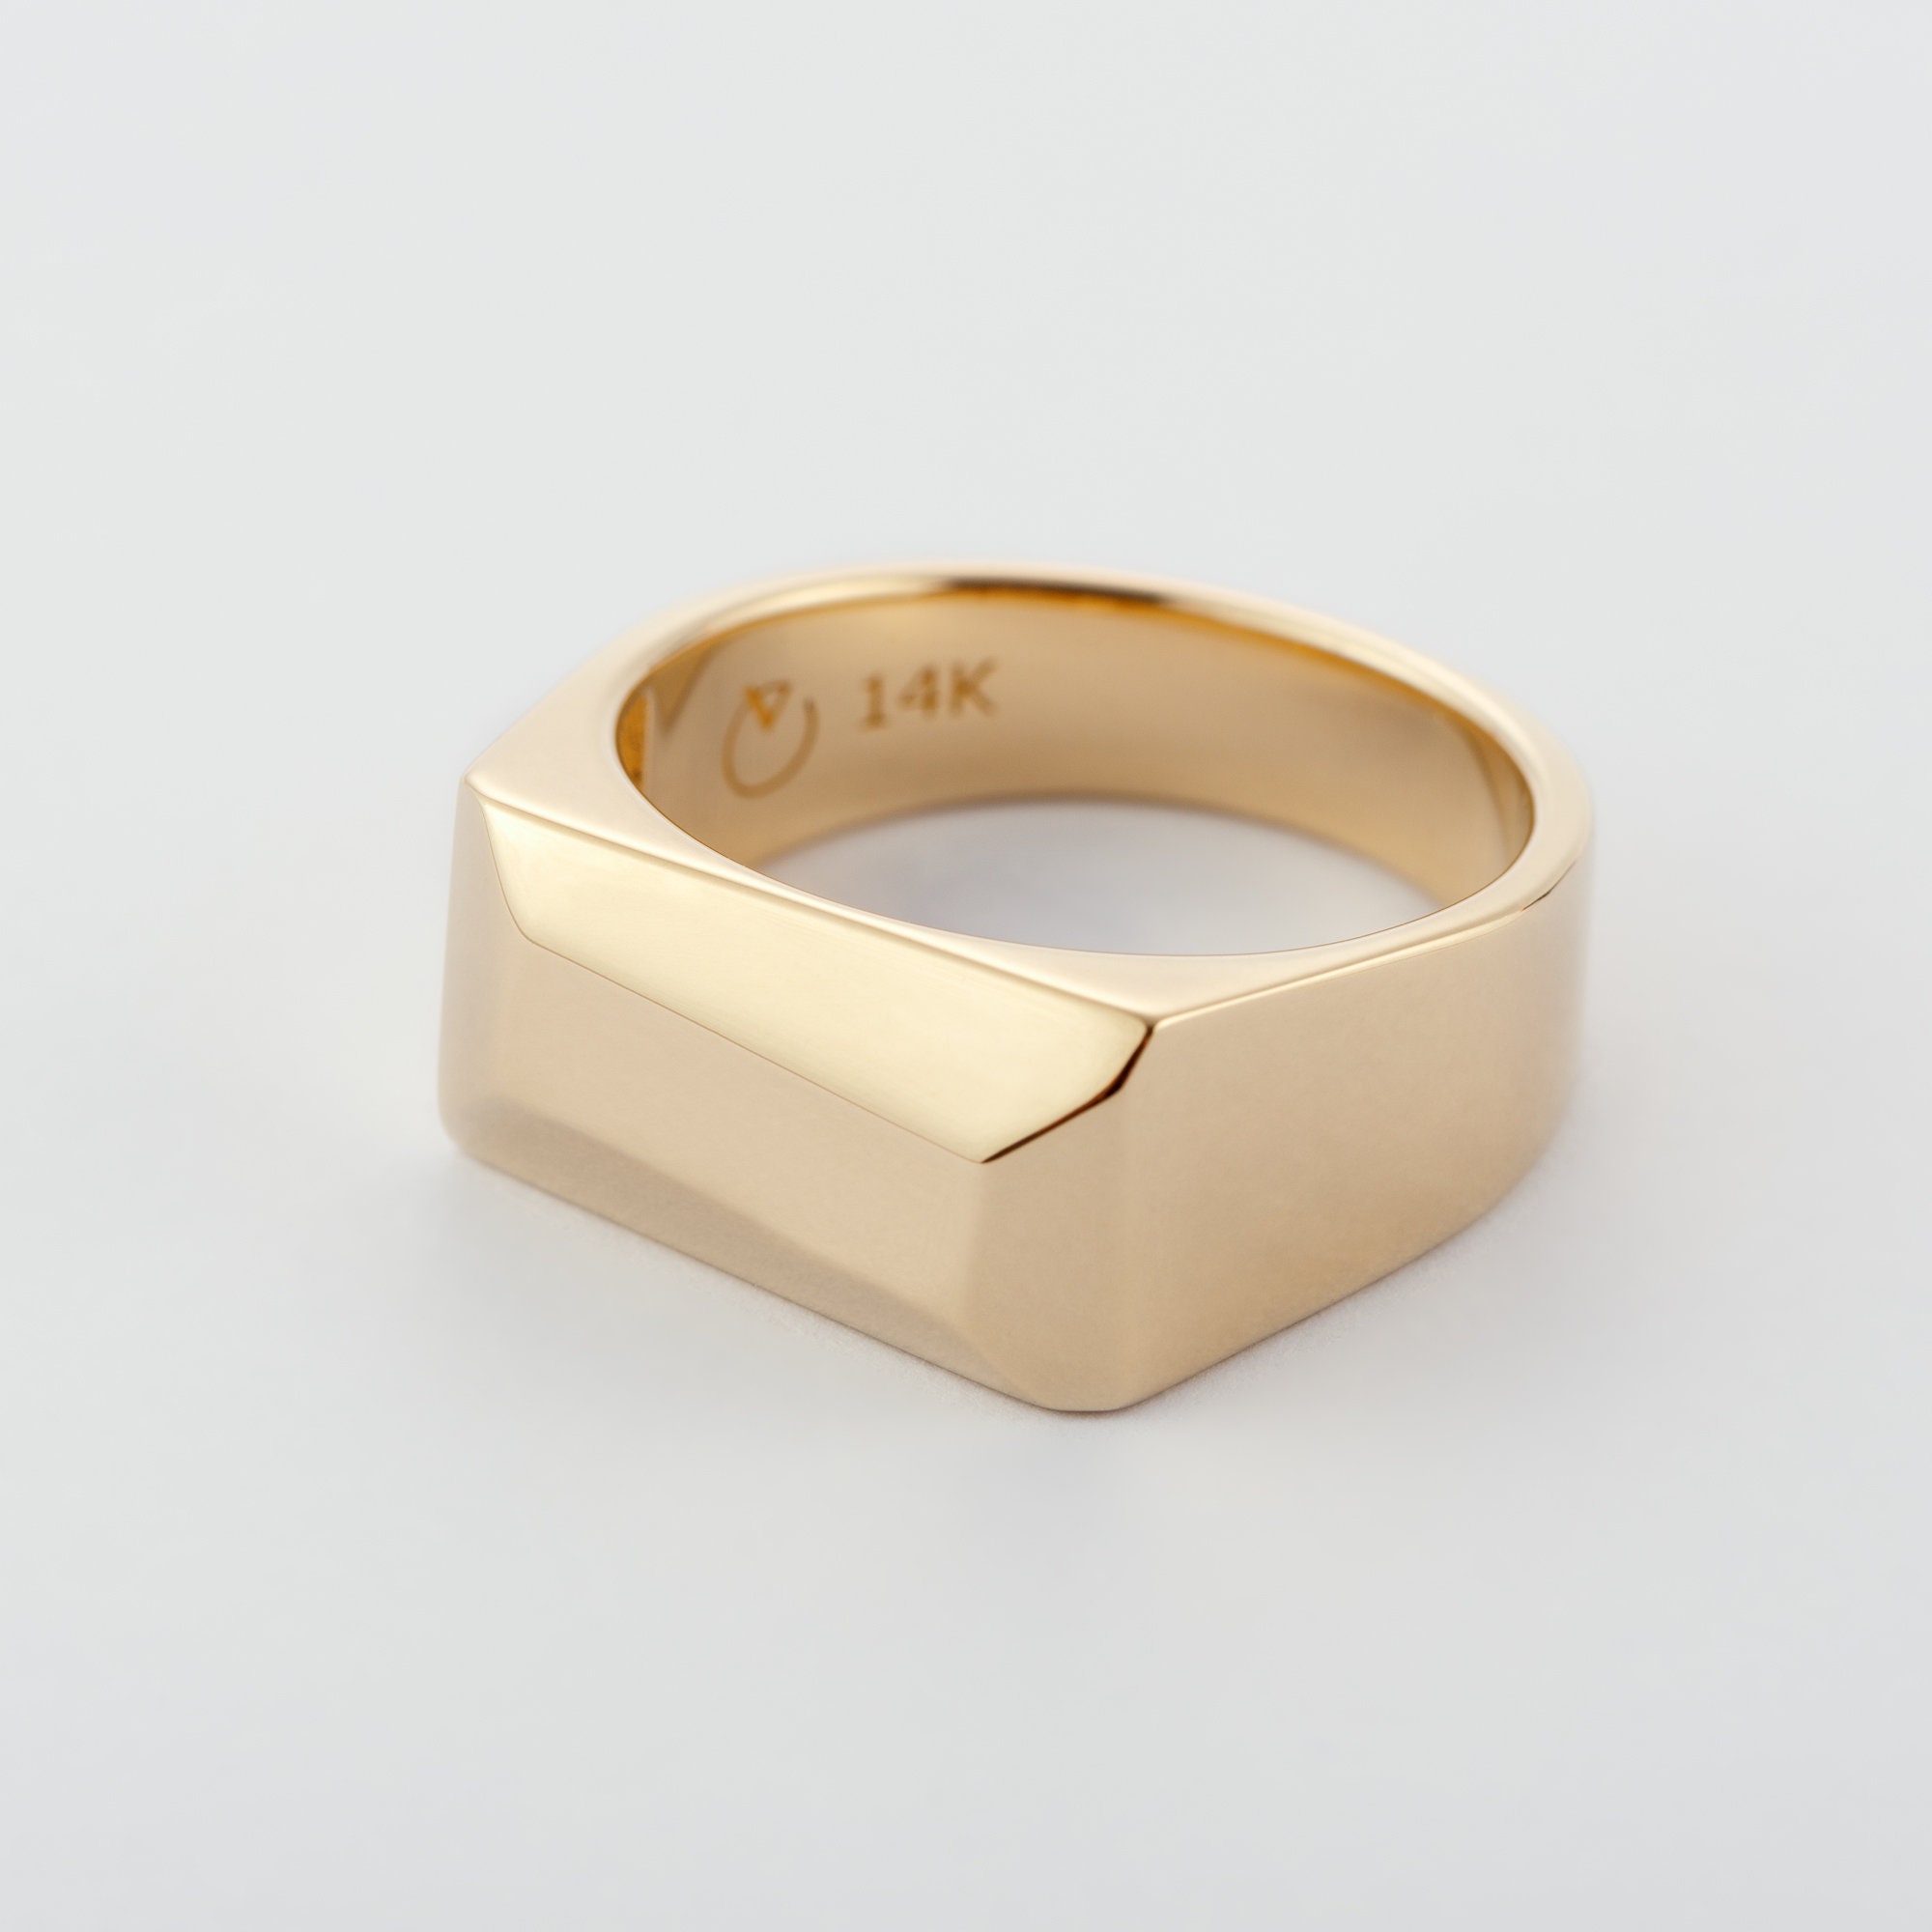 Mens 14K Gold Geometric Signet Ring Gold Ring for Men - Etsy UK